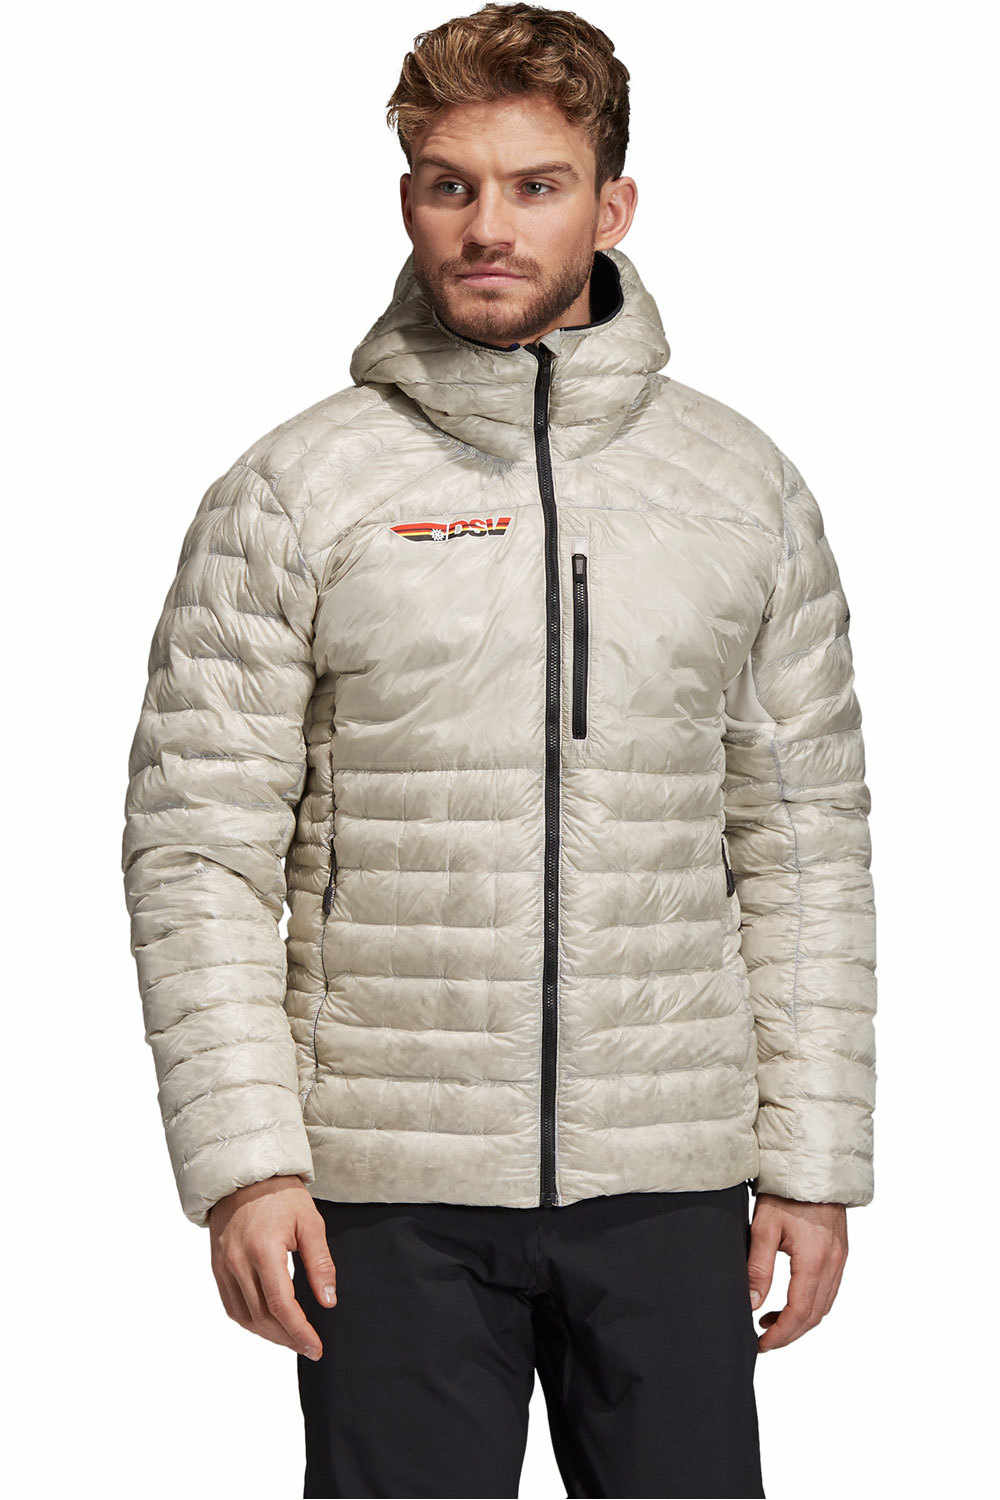 adidas chaqueta outdoor hombre CLIMAHEAT JKT vista frontal